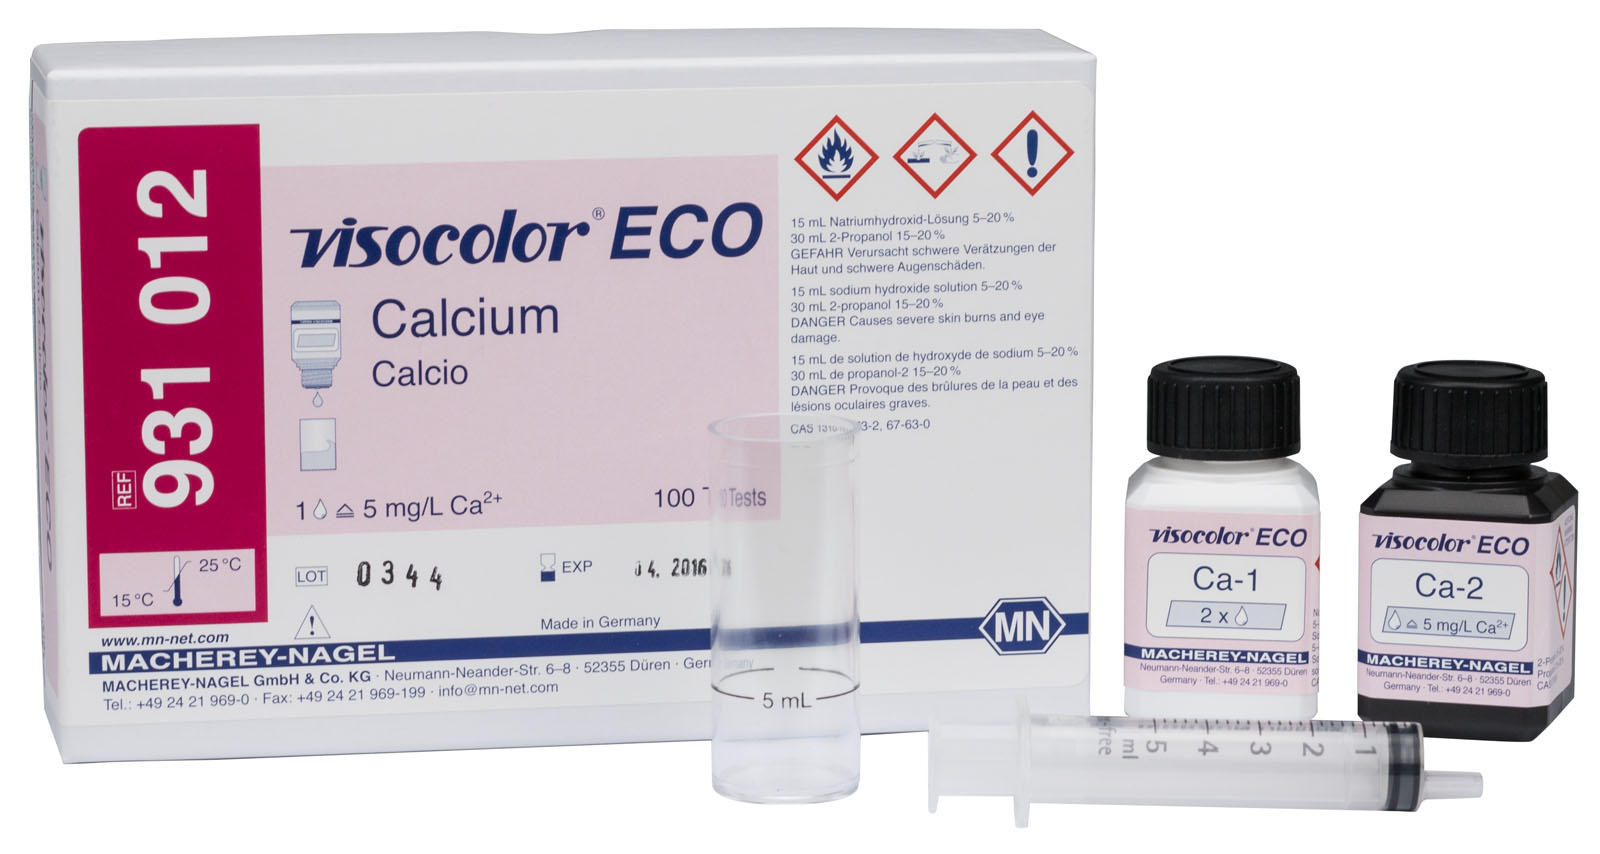 VISOCOLOR® ECO Calcium